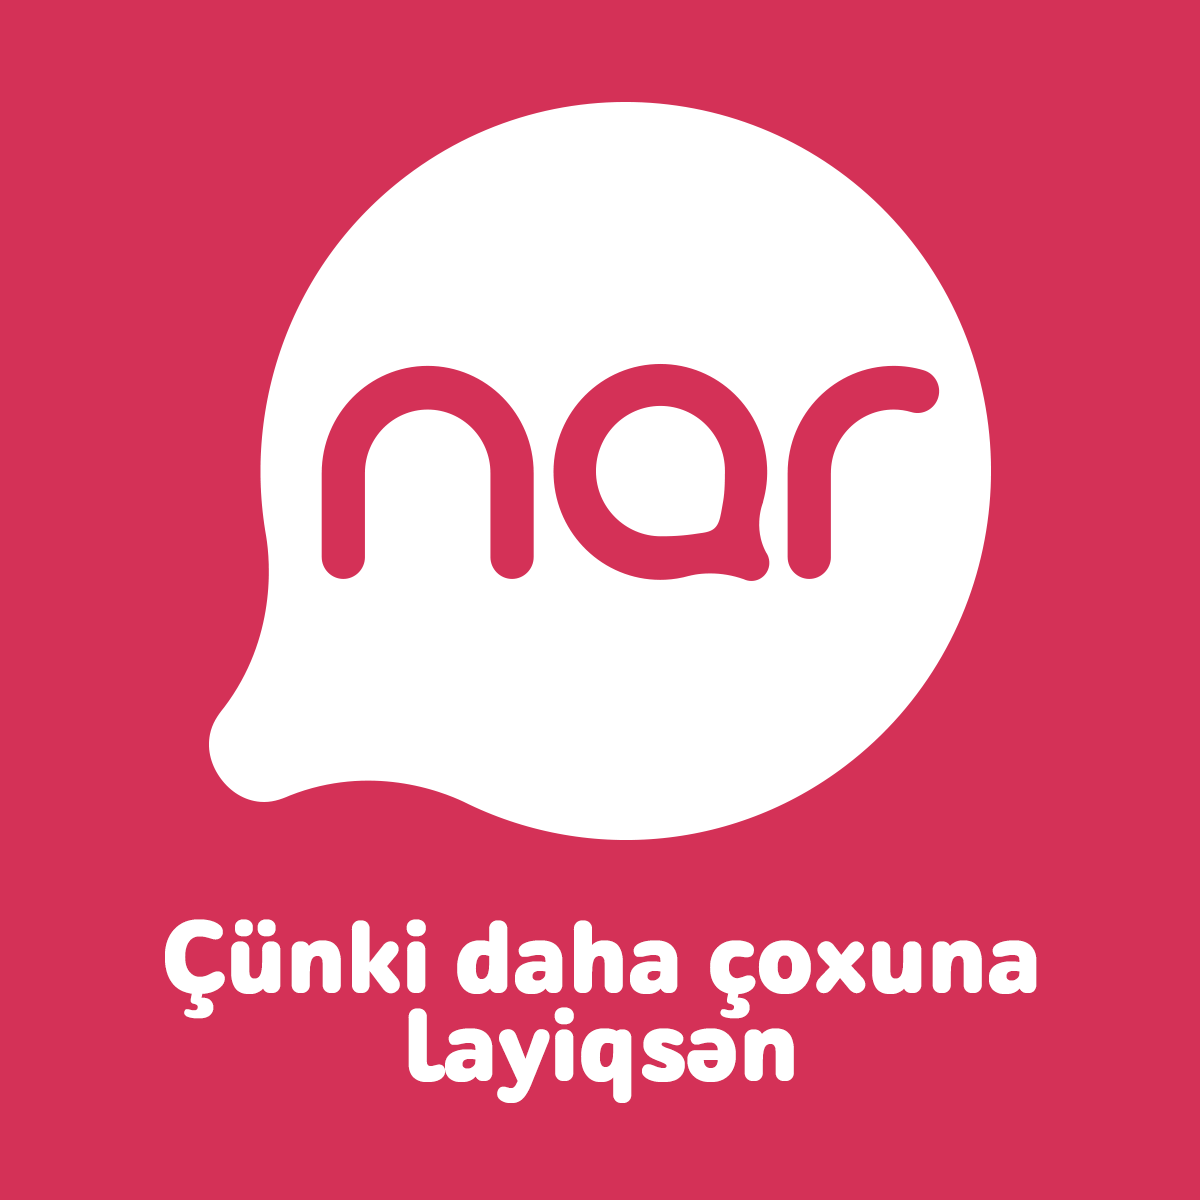 Nar поддержал онлайн - мероприятие проведенное молодежью